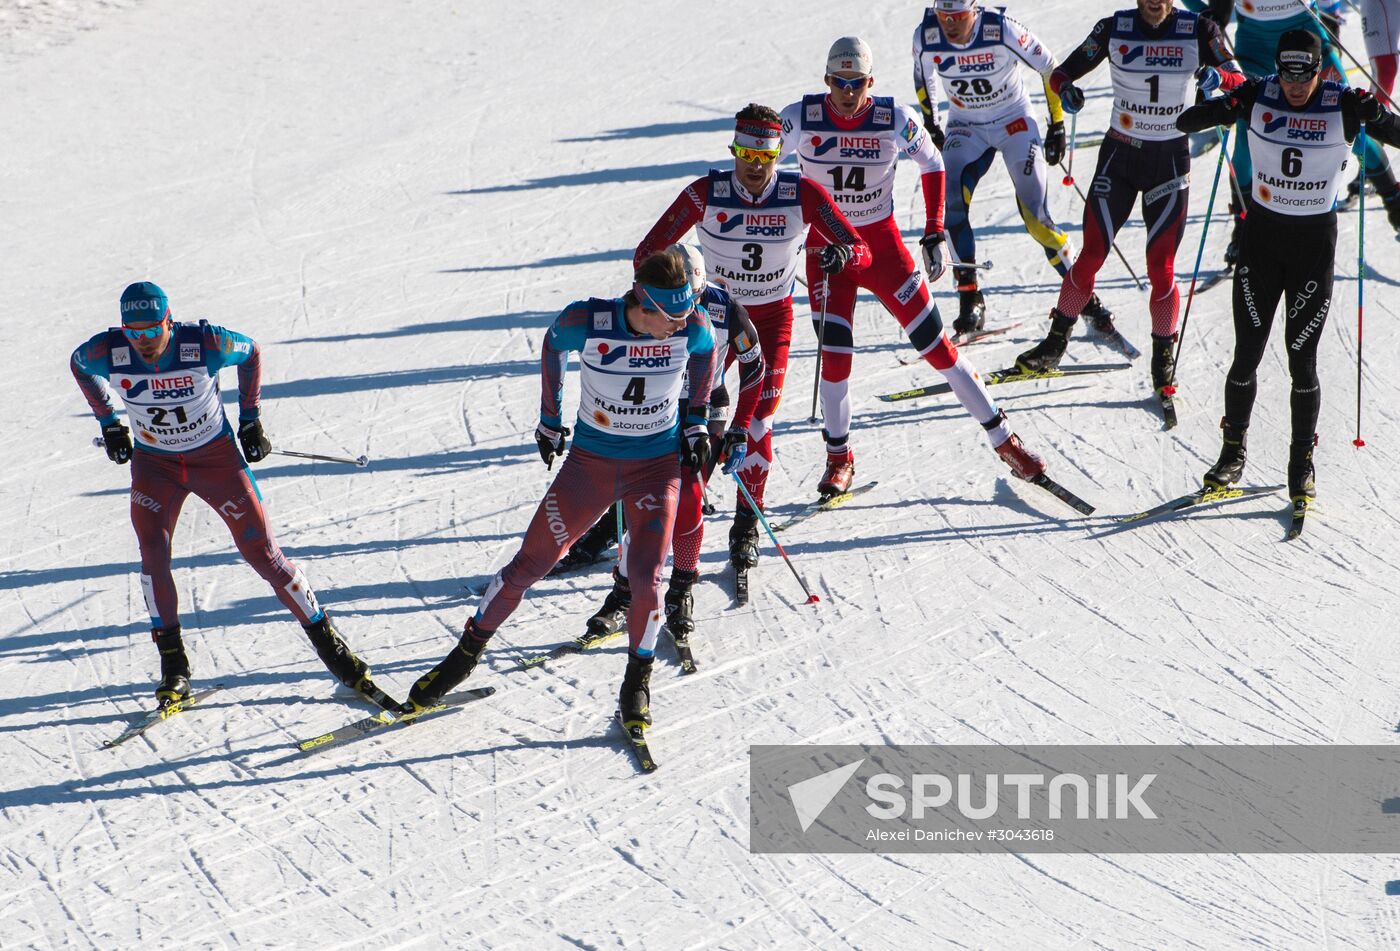 FIS Nordic World Ski Championships 2017. Men's mass start